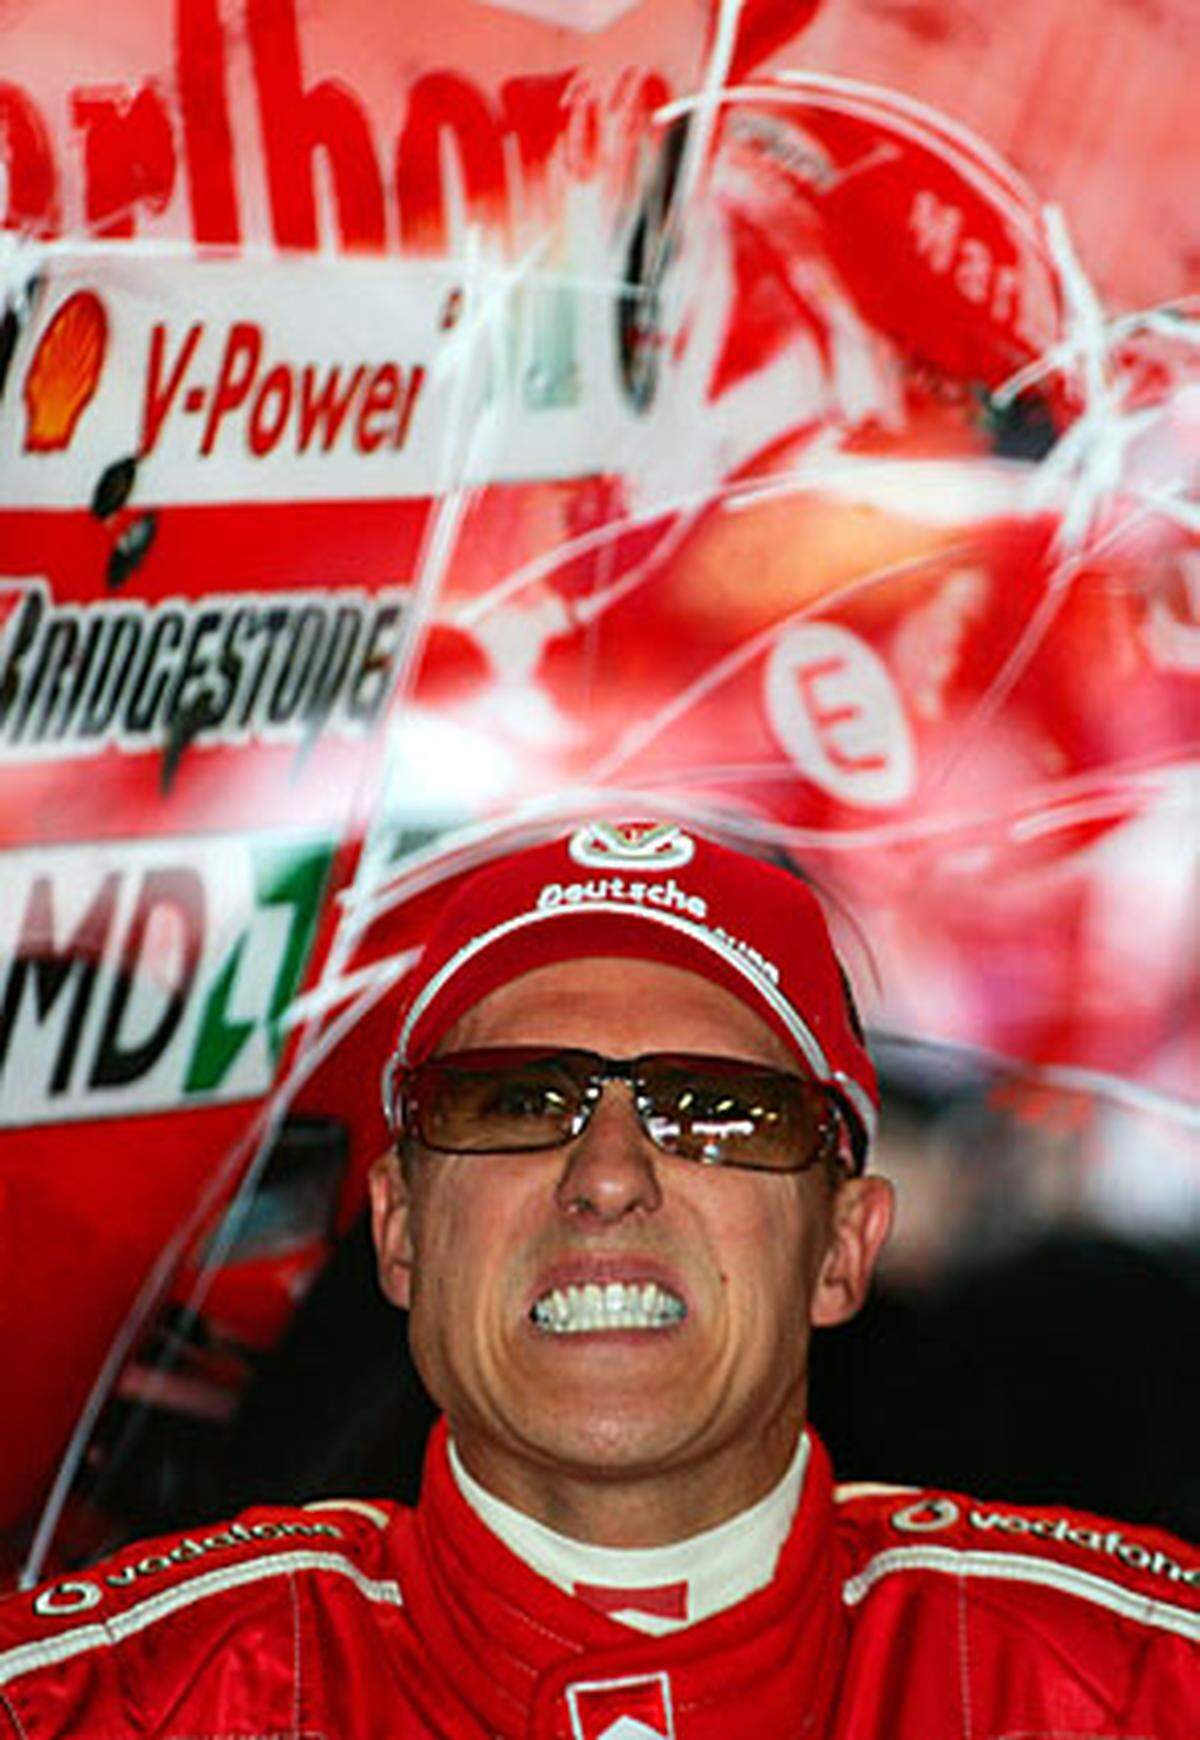 Bruderzwist in Monaco: Michael Schumacher versucht, seinen Bruder noch auf der Ziellinie zu überholen, um Sechster zu werden. Schumi II tobt: "Manchmal schaltet er sein Gehirn nicht ein."